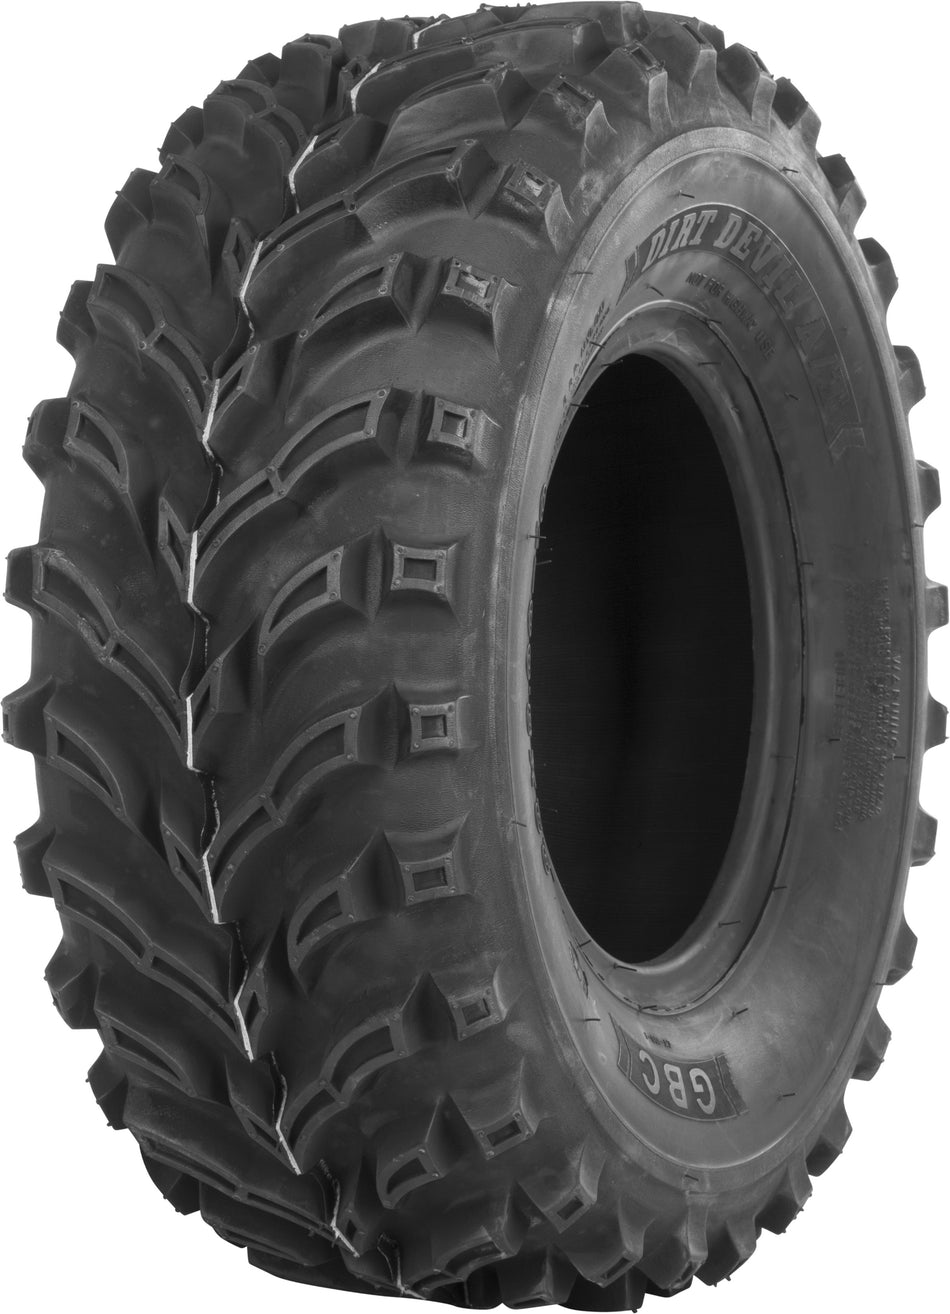 GBC Tire Dirt Devil A/T Rear 23x10-10 Bias Lr-375lbs AR1019